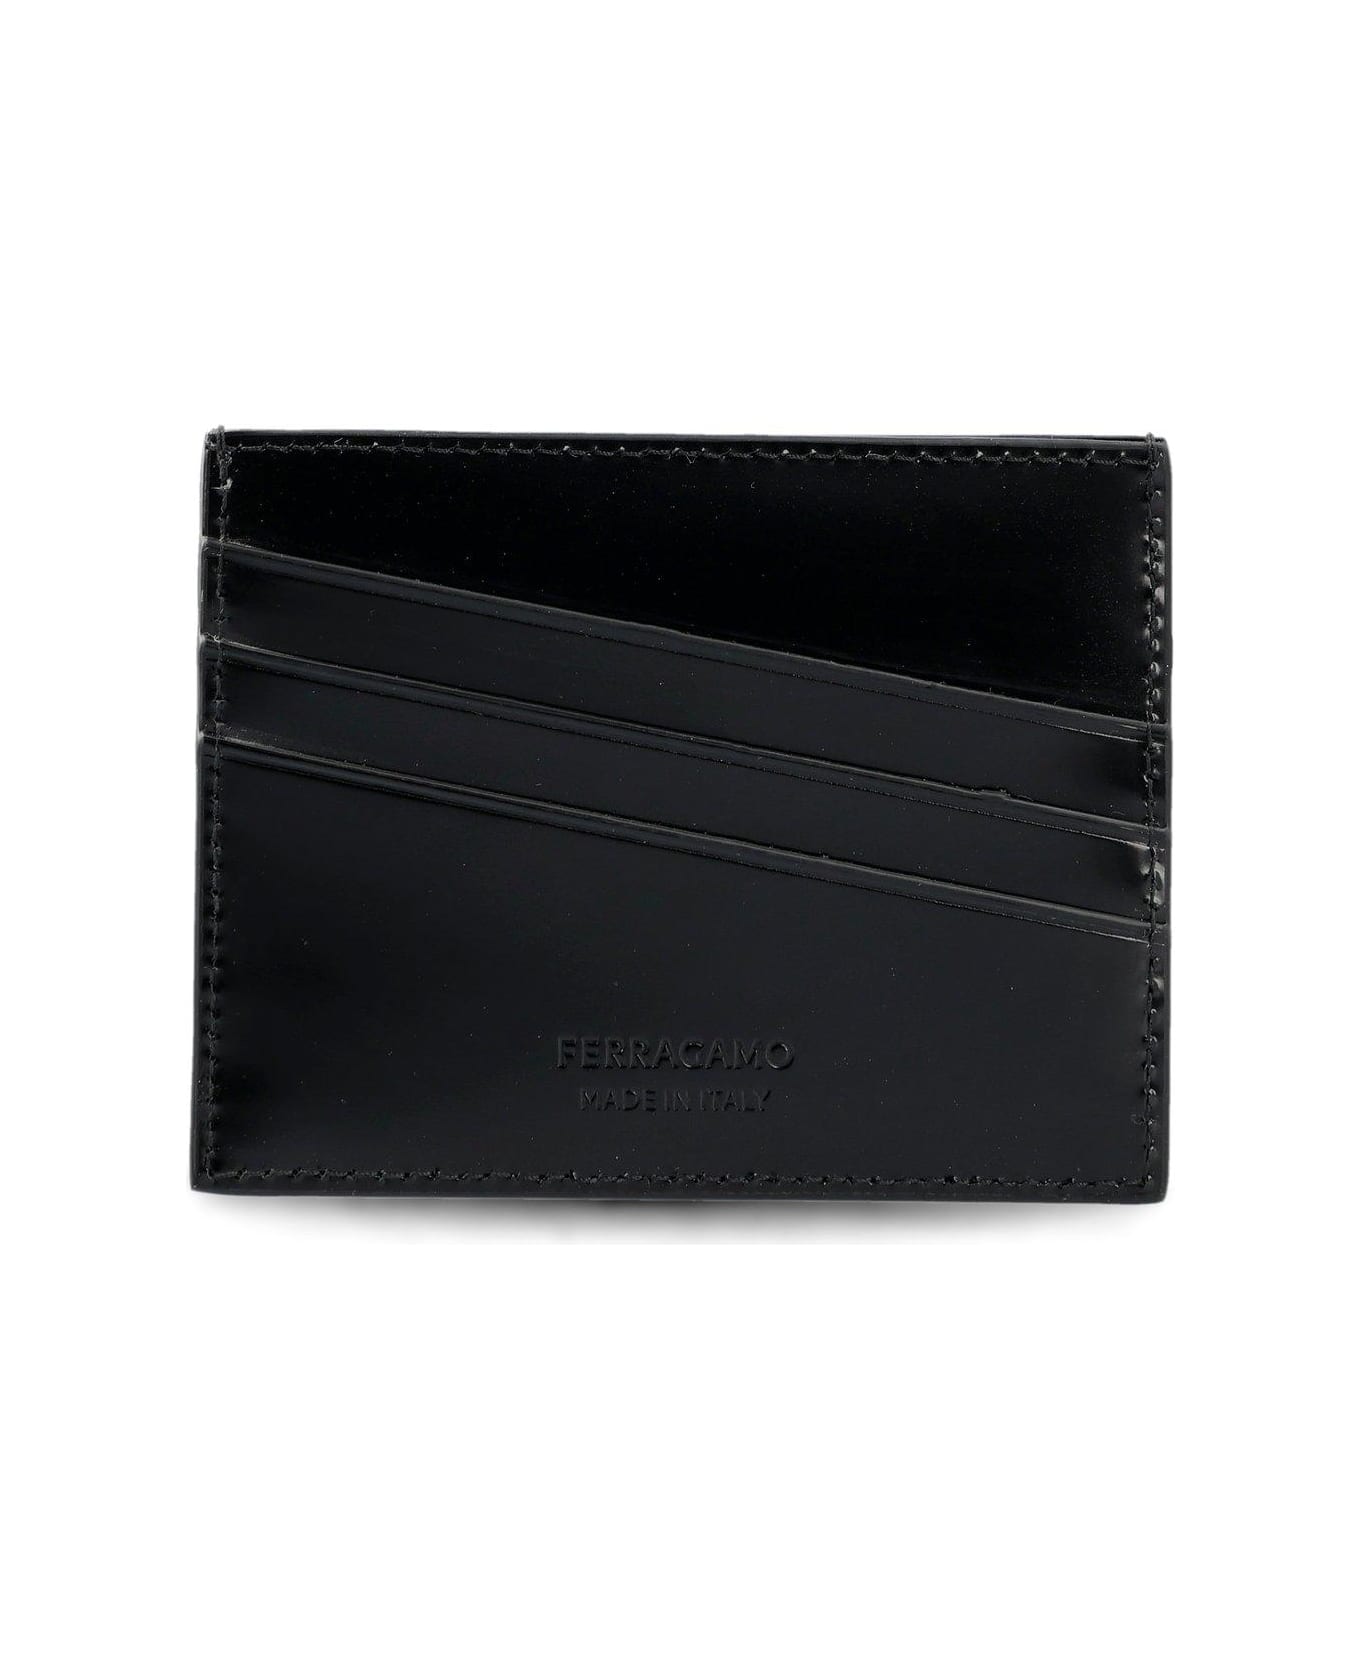 Ferragamo Logo Embossed Cardholder - Black 財布